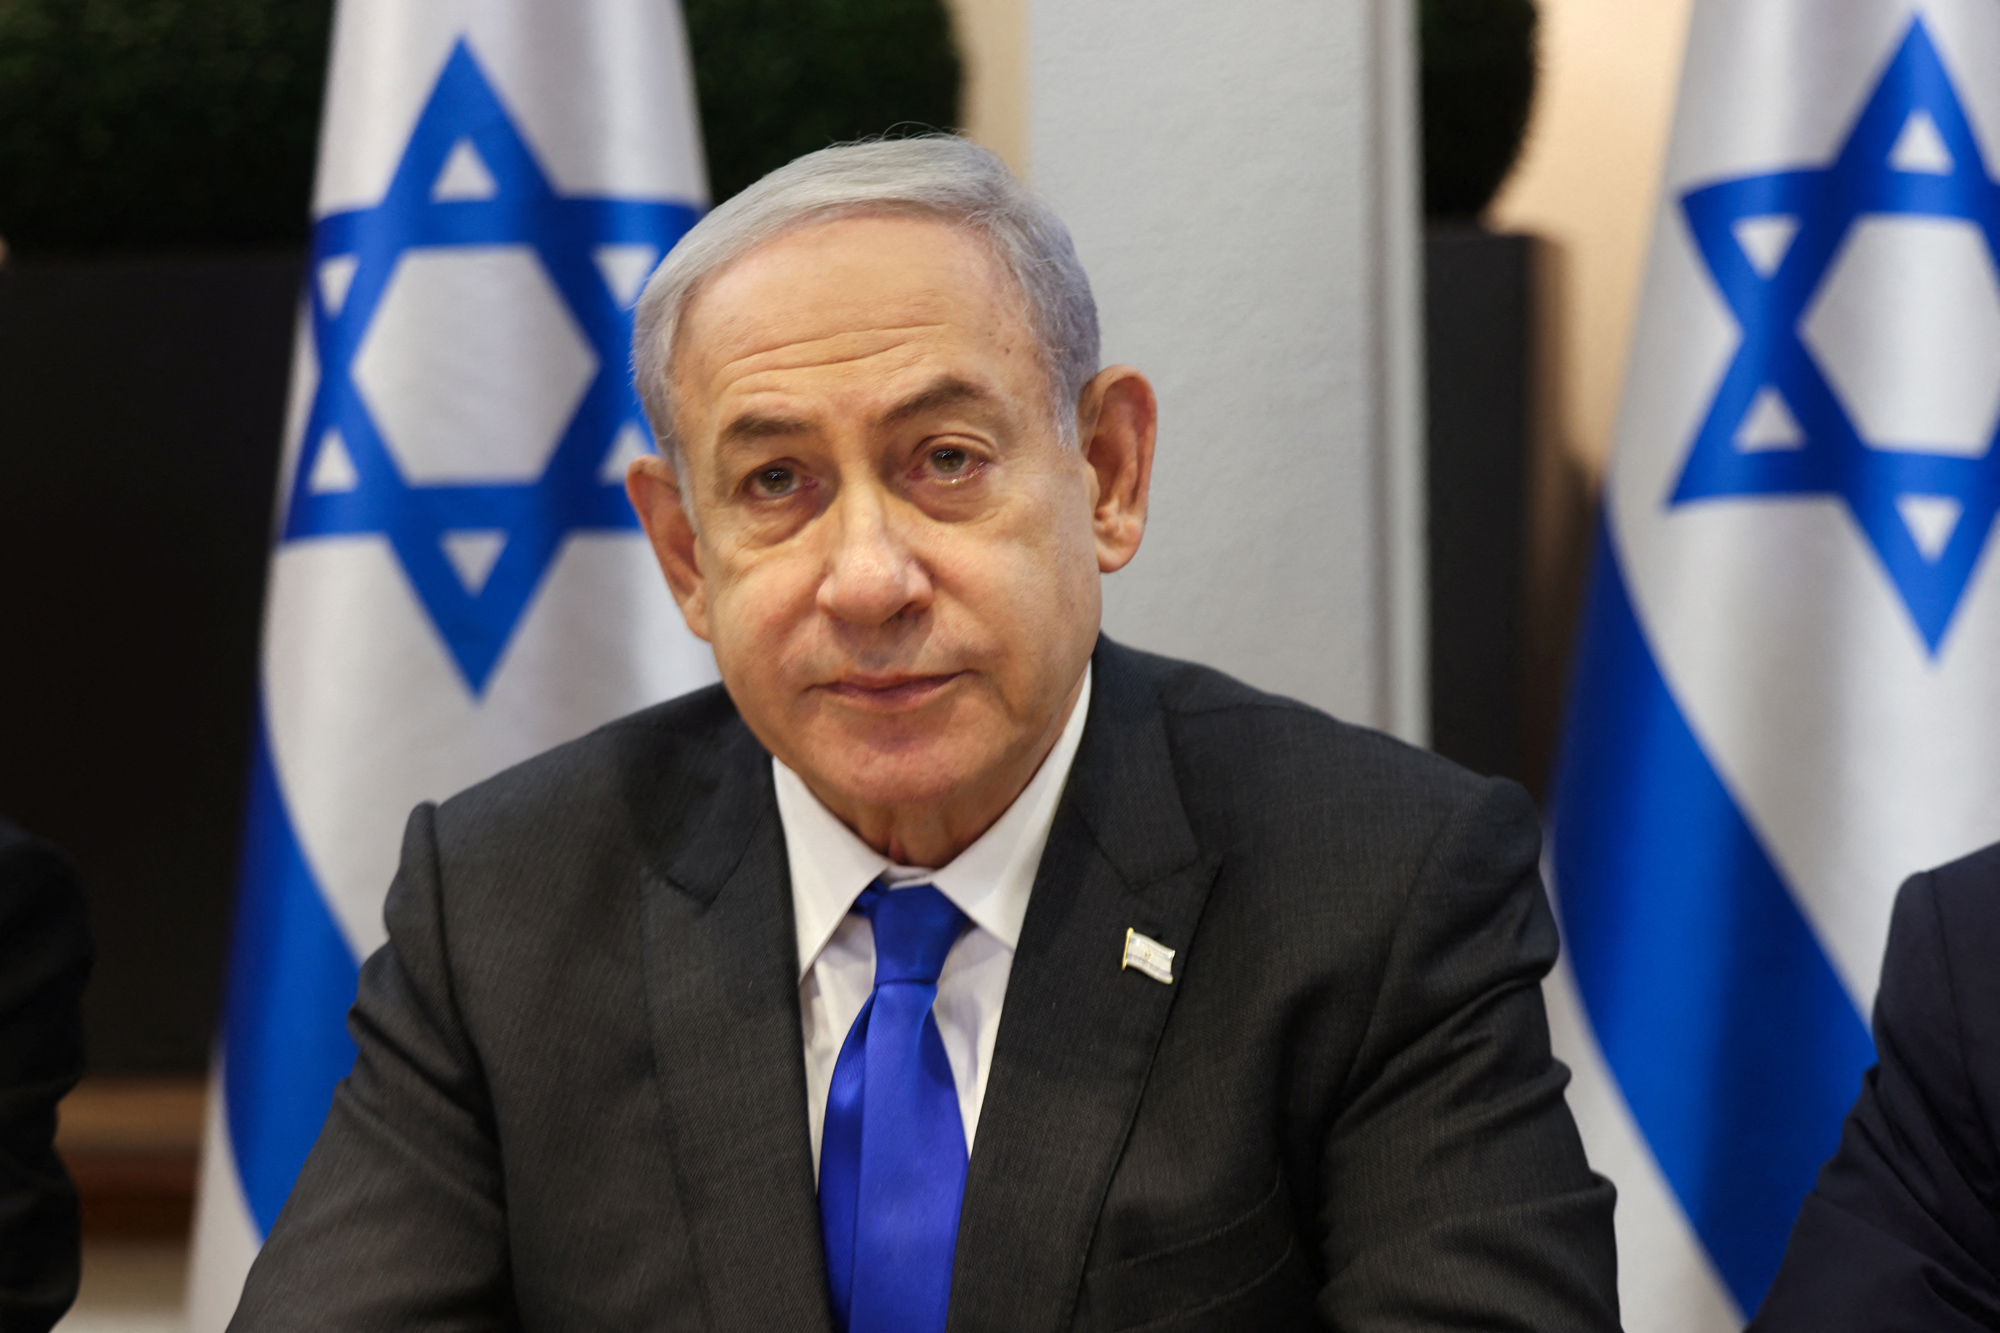 El primer ministro israelí, Benjamin Netanyahu, preside una reunión de gabinete en Kirya, que alberga el Ministerio de Defensa israelí, en Tel Aviv, Israel, el 17 de diciembre.